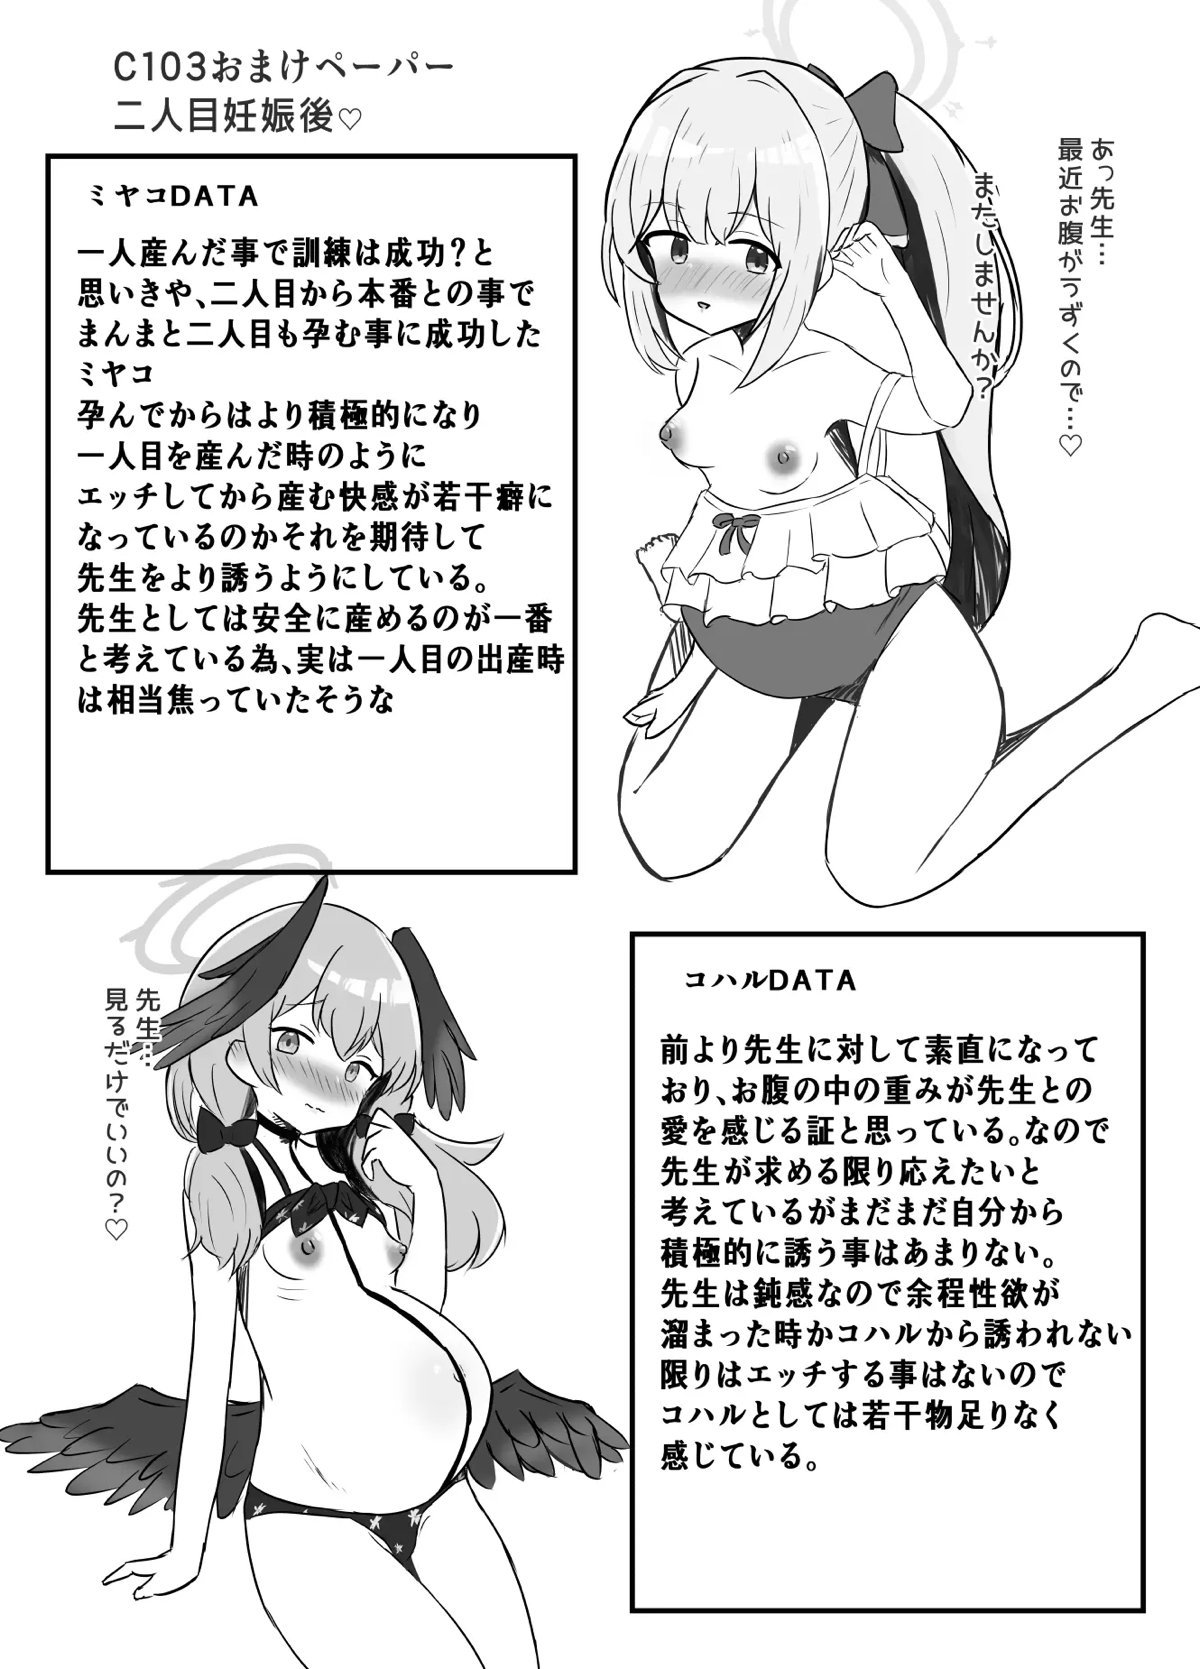 【C103】ミヤコとコハルに頼まれ性交から出産するまでの実施訓練をすることになった先生が、ボテ腹セックスしながら出産させるｗ【ブルーアーカイブ】